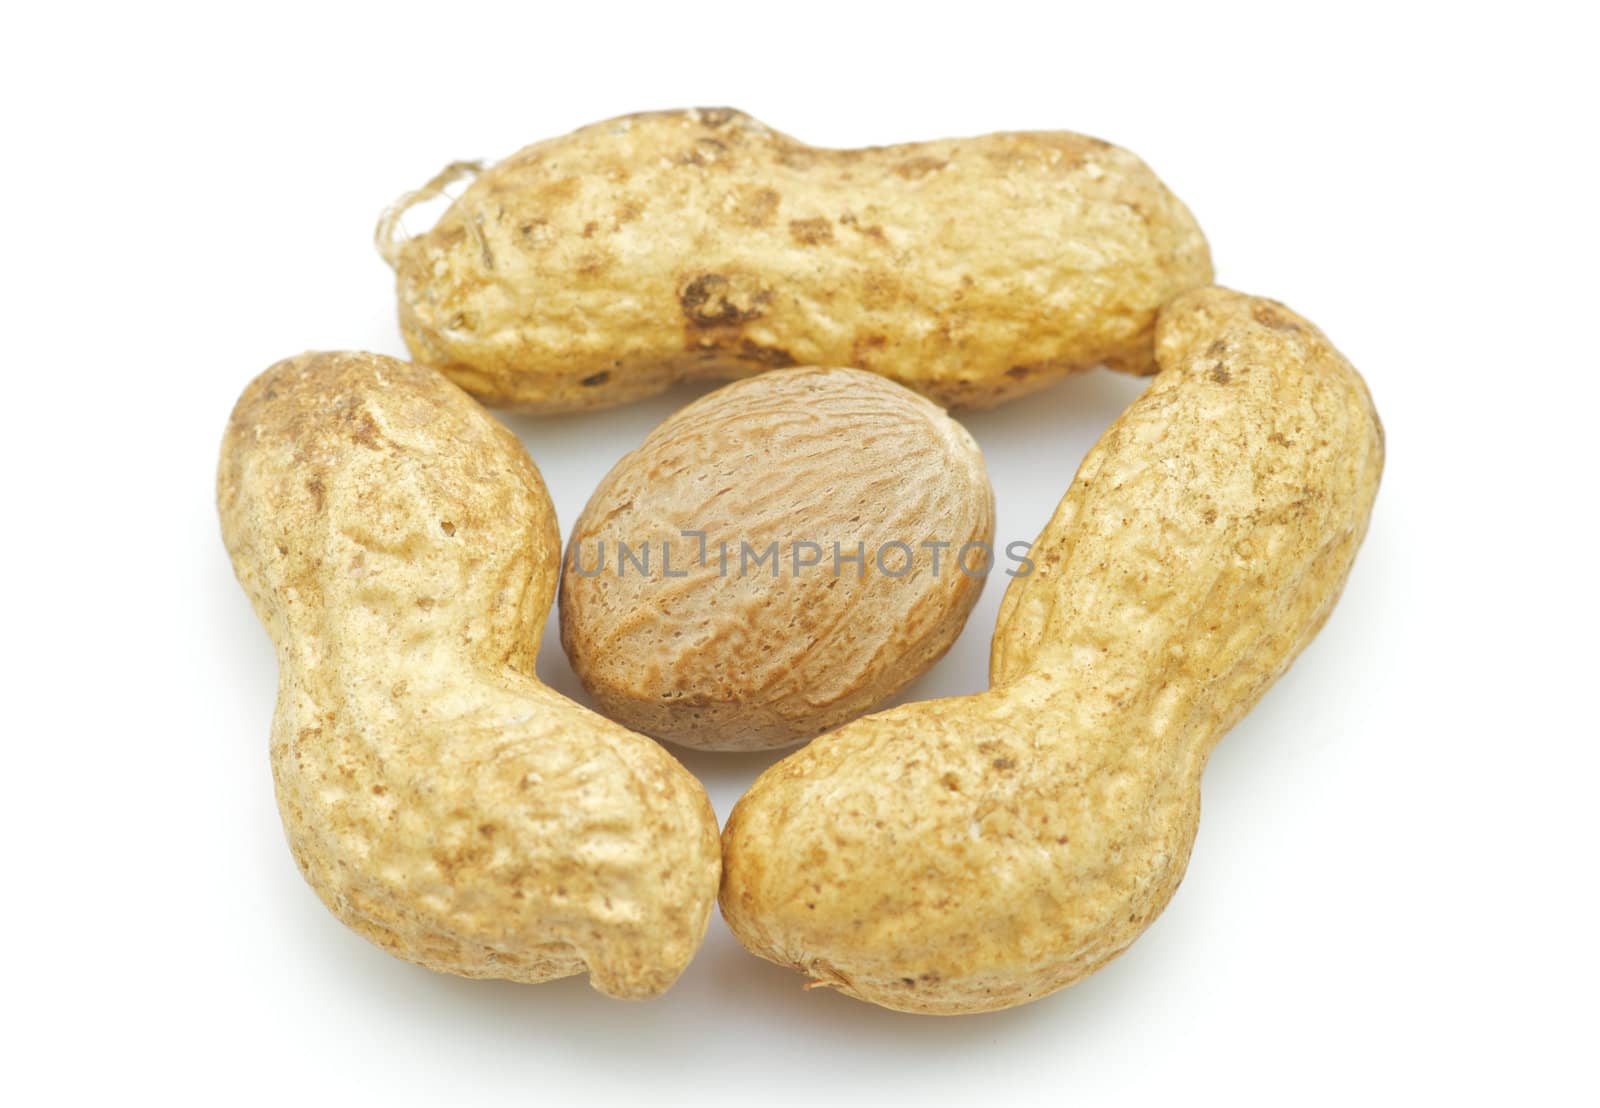 Peanut nuts in shell by zhekos